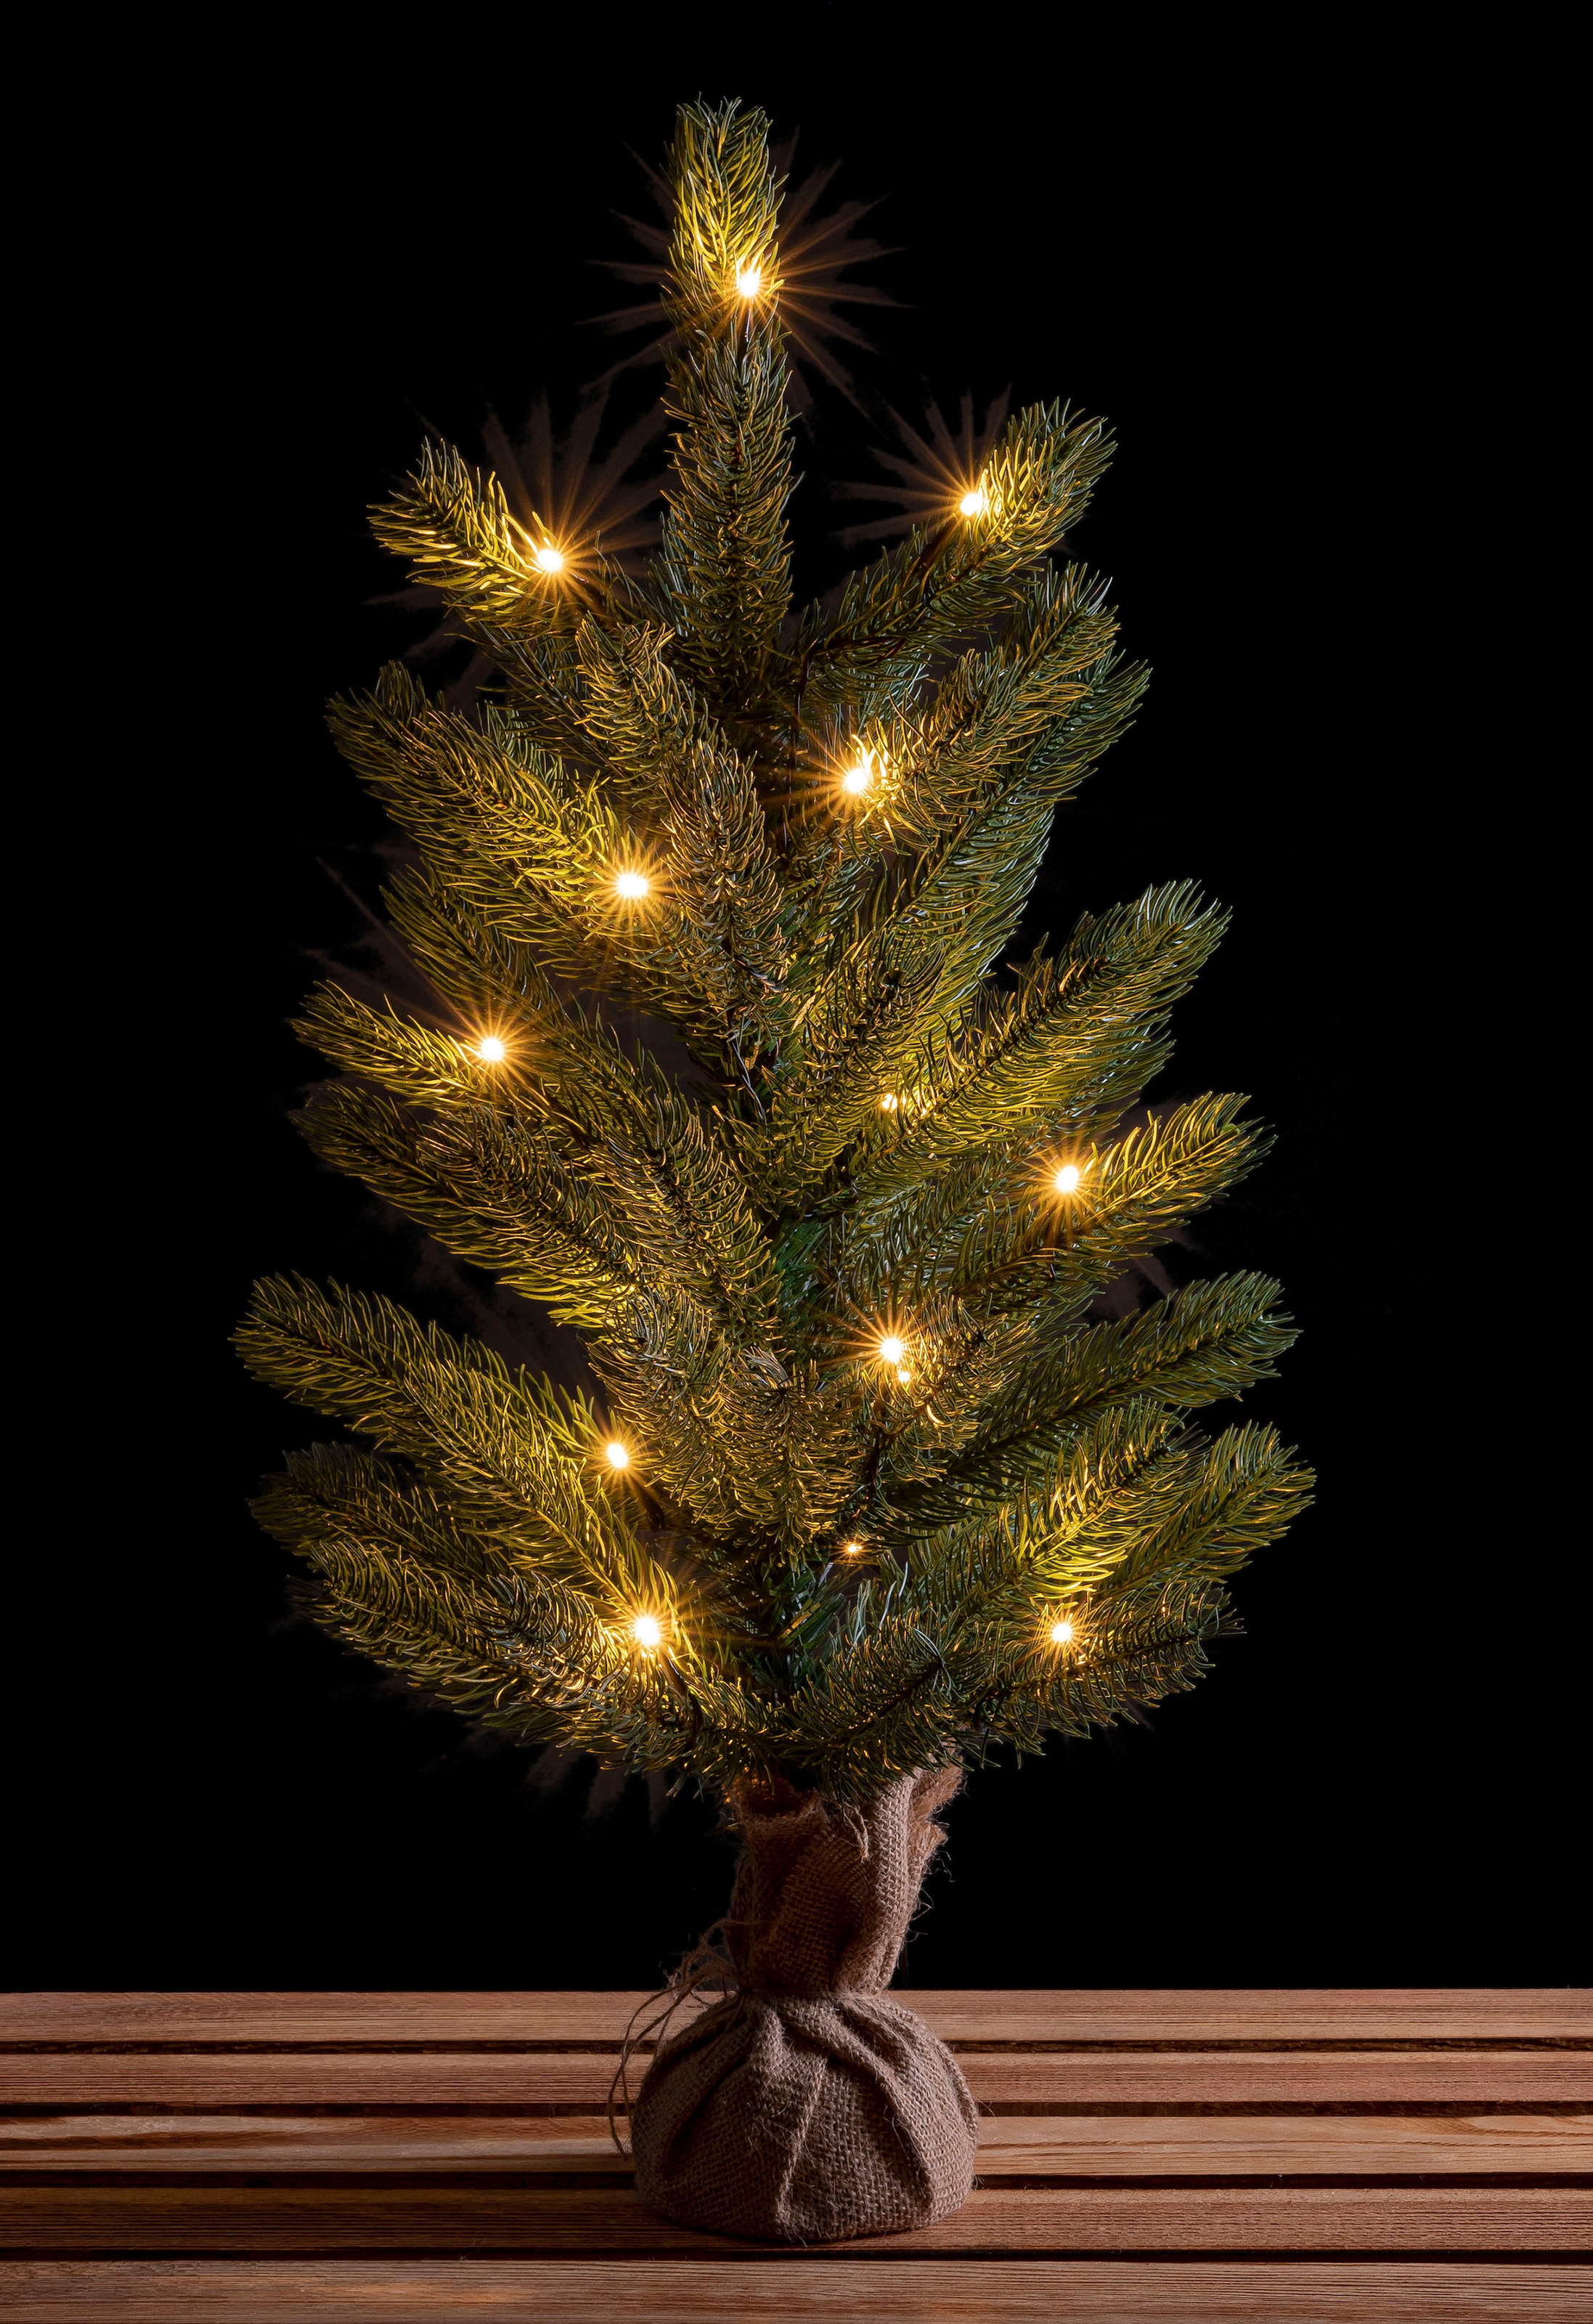 IC Winterworld Künstlicher Weihnachtsbaum »LED-Tannenbaum, künstlicher  Christbaum, Höhe ca. 60 cm«, Nordmanntanne, Weihnachtsdeko mit Jutebeutel  um den Betonfuß, Batteriebetrieb kaufen bei OTTO